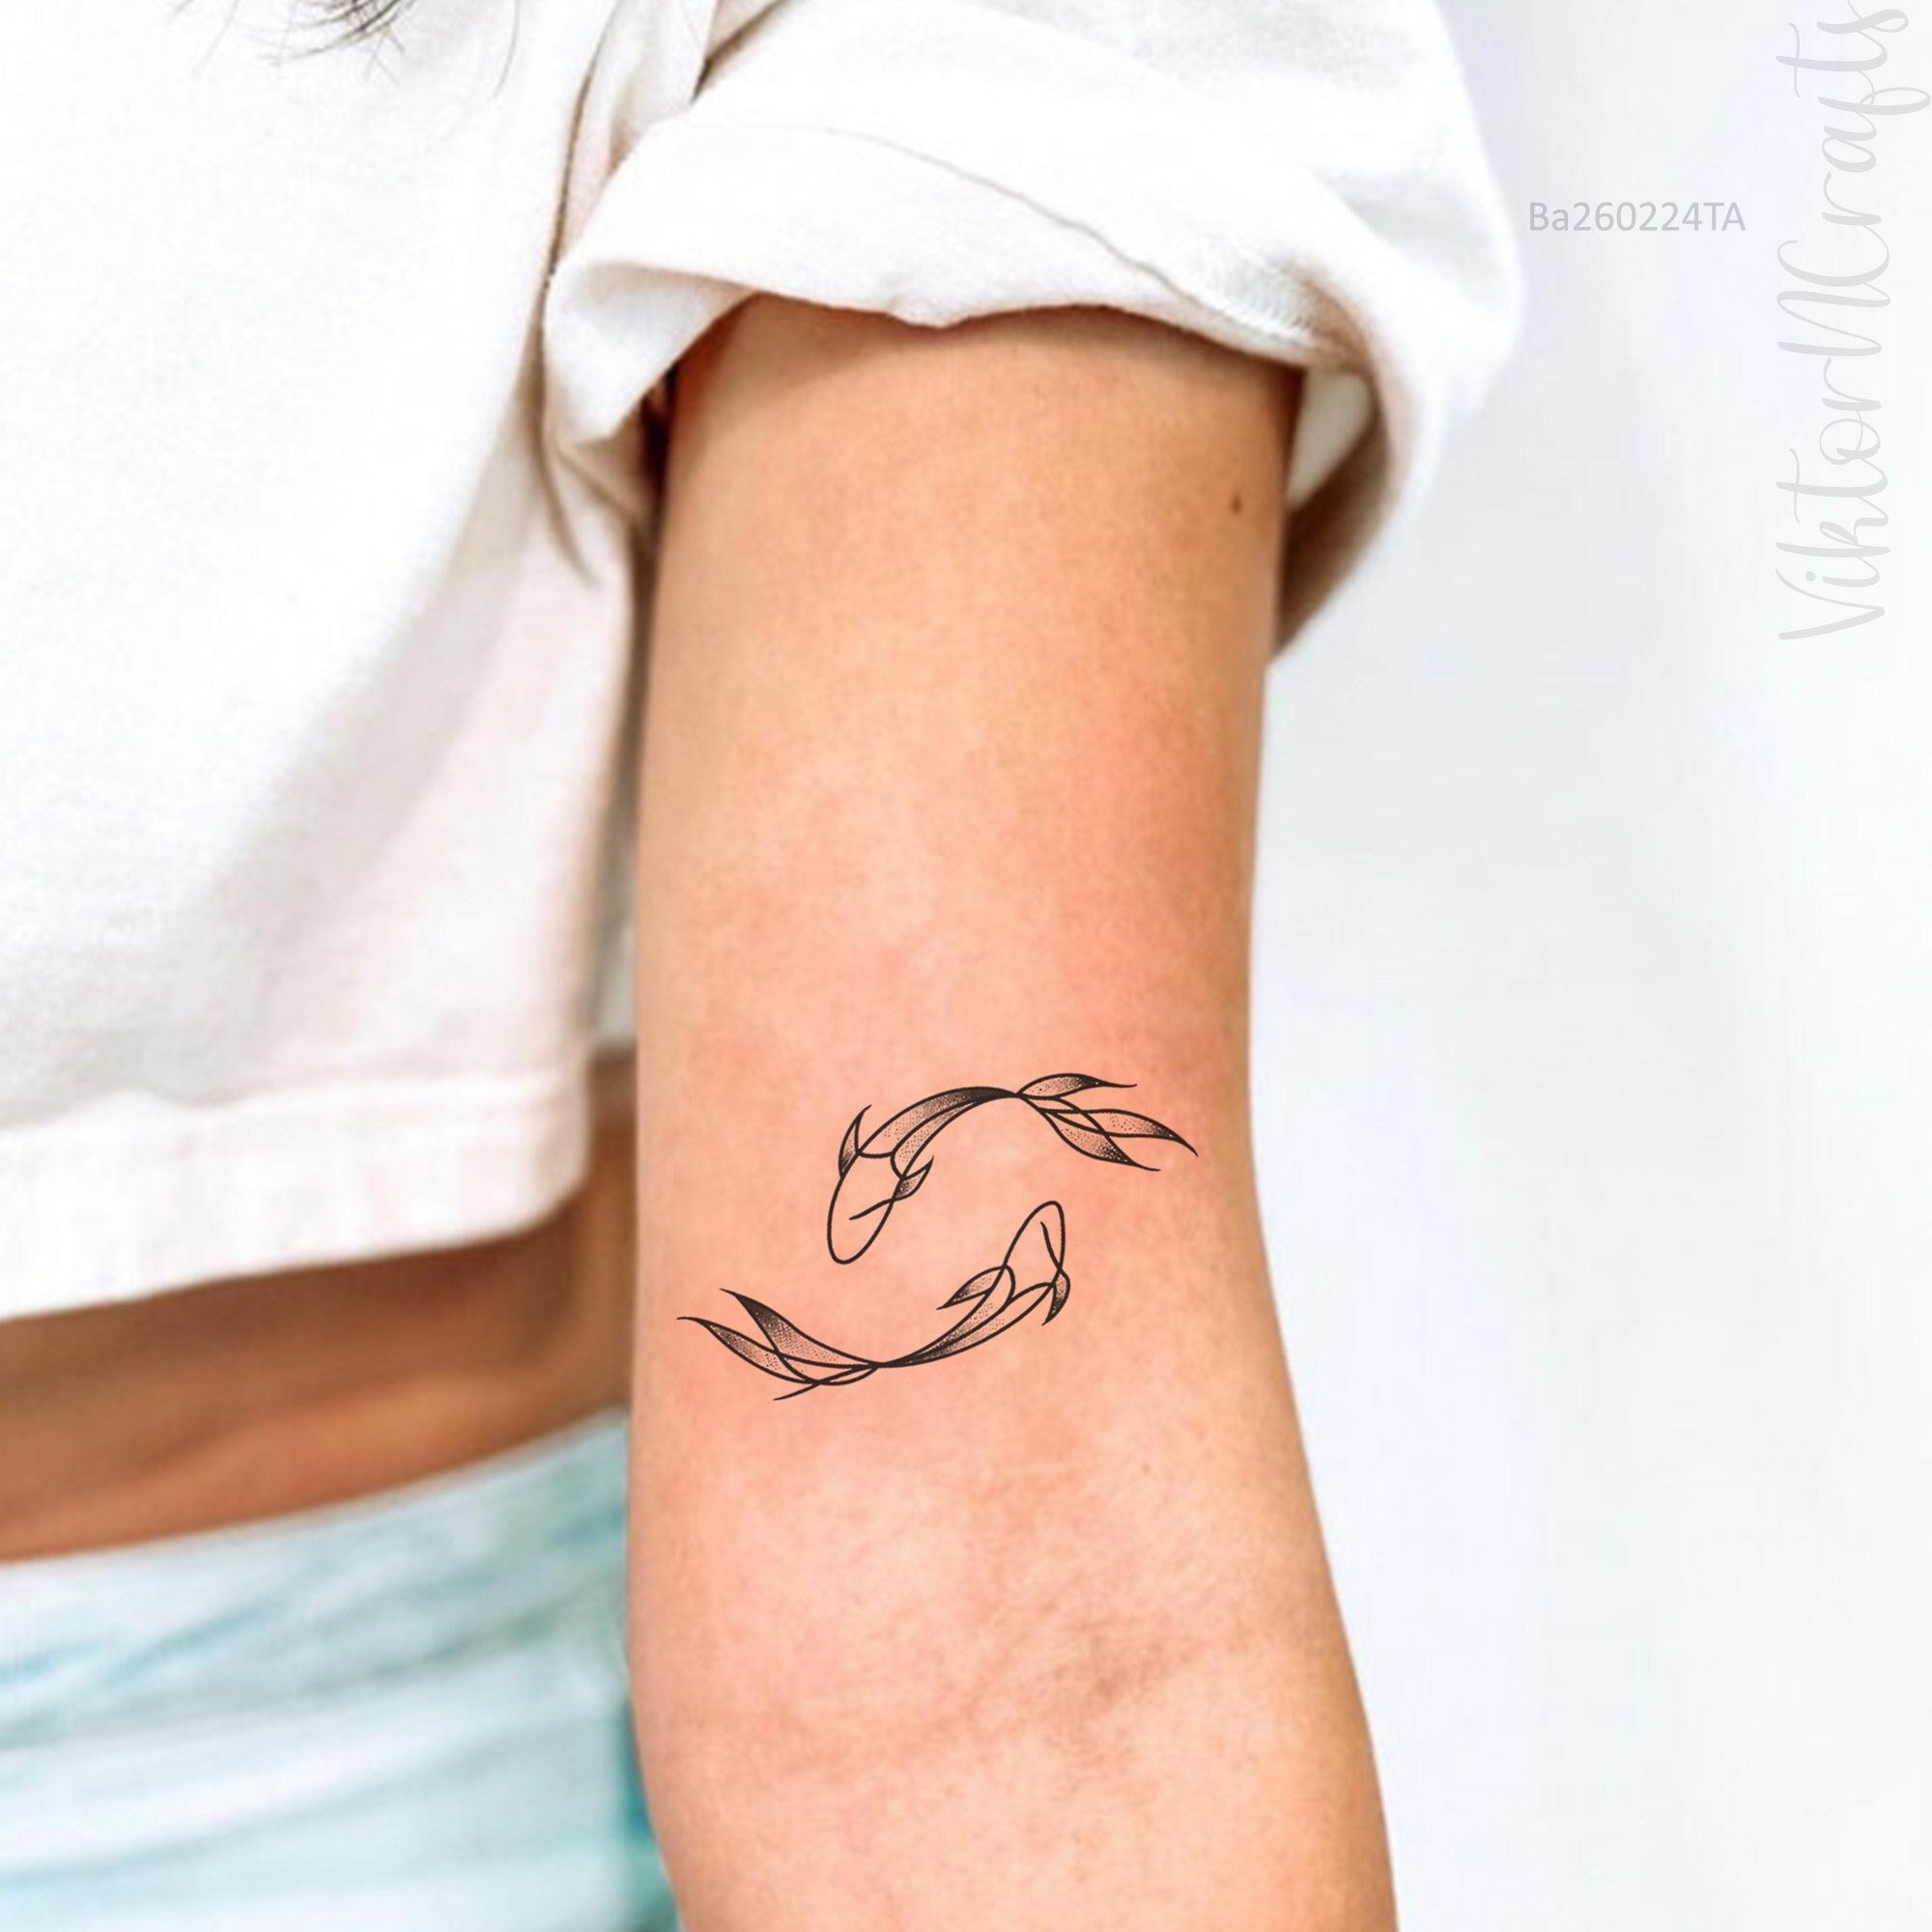 Small Jesus fish tattoo on wrist